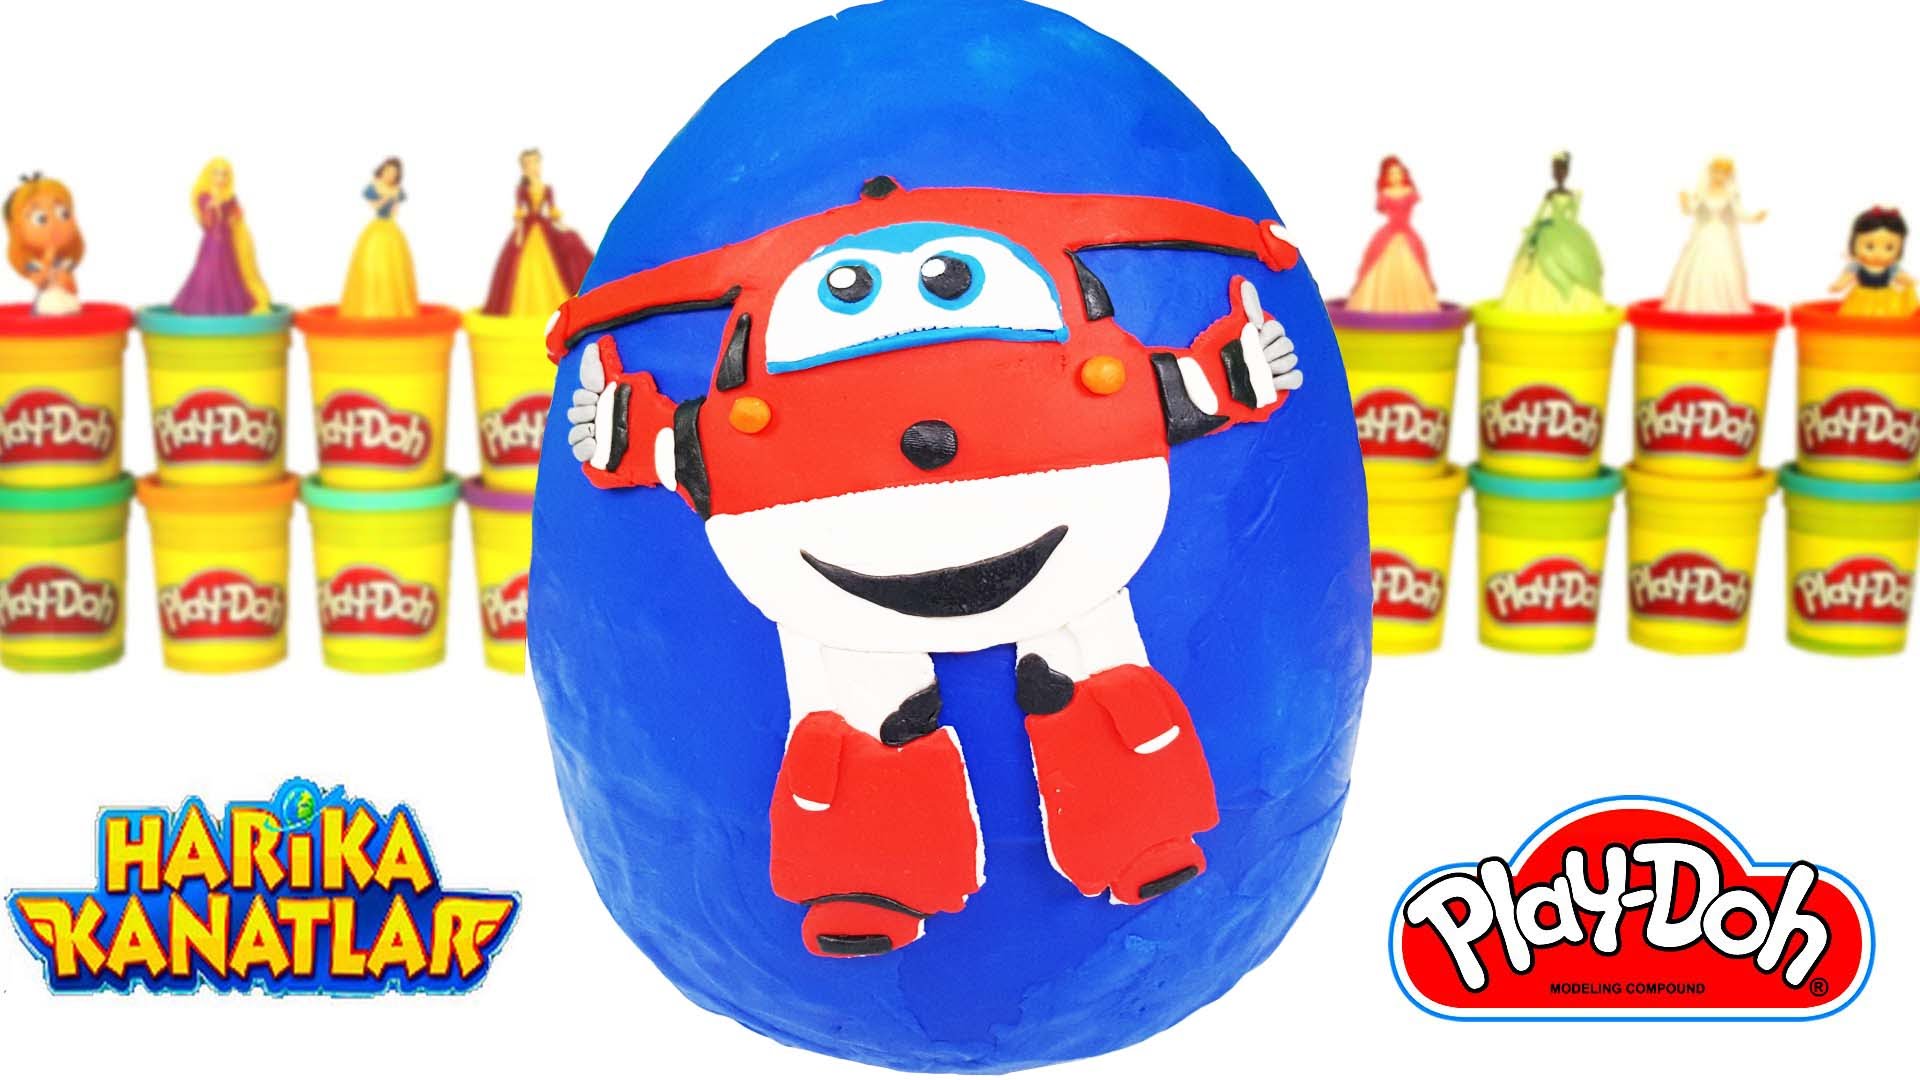 Harika Kanatlar Jett Dev Süpriz Yumurta ToyBox Play Doh Pinypon Jett Harika Kanatlar Oyun Hamuru